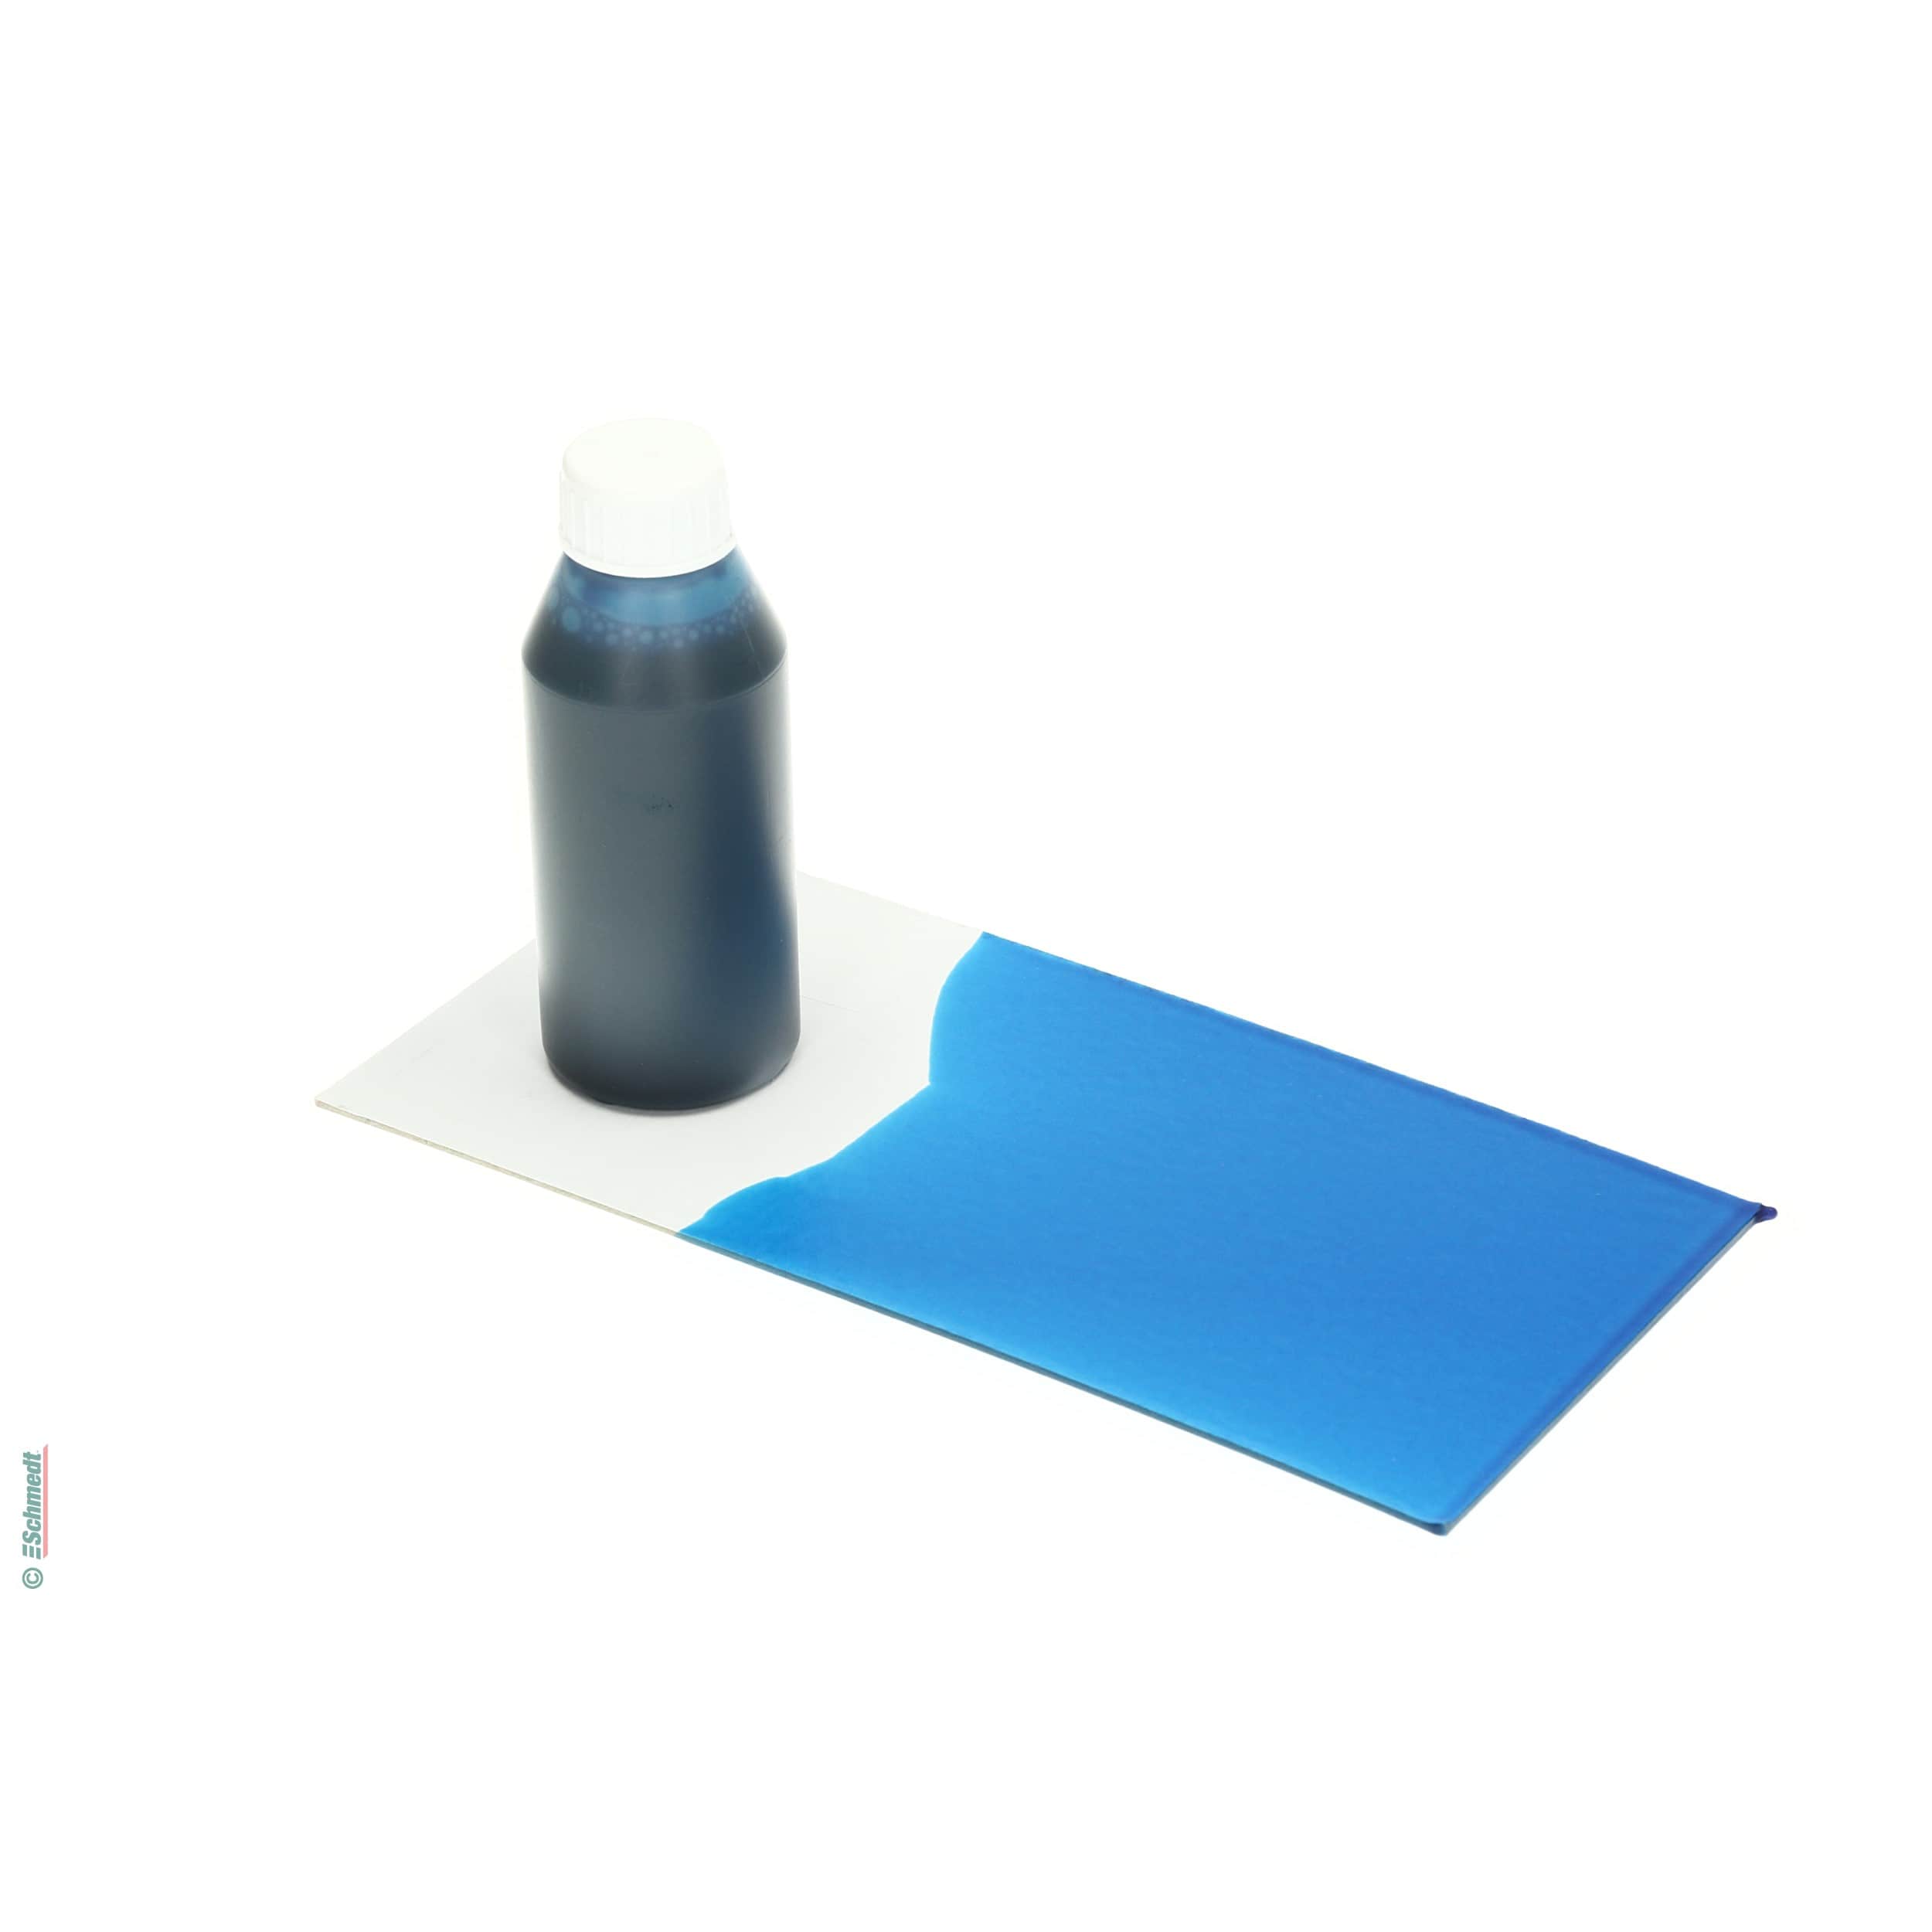 Peinture de colle - Couleur bleu foncé - Contenu Bouteille / 100 ml - pour teindre colles à dispersion comme p. ex. pour bloc-notes ou livre... - image-1